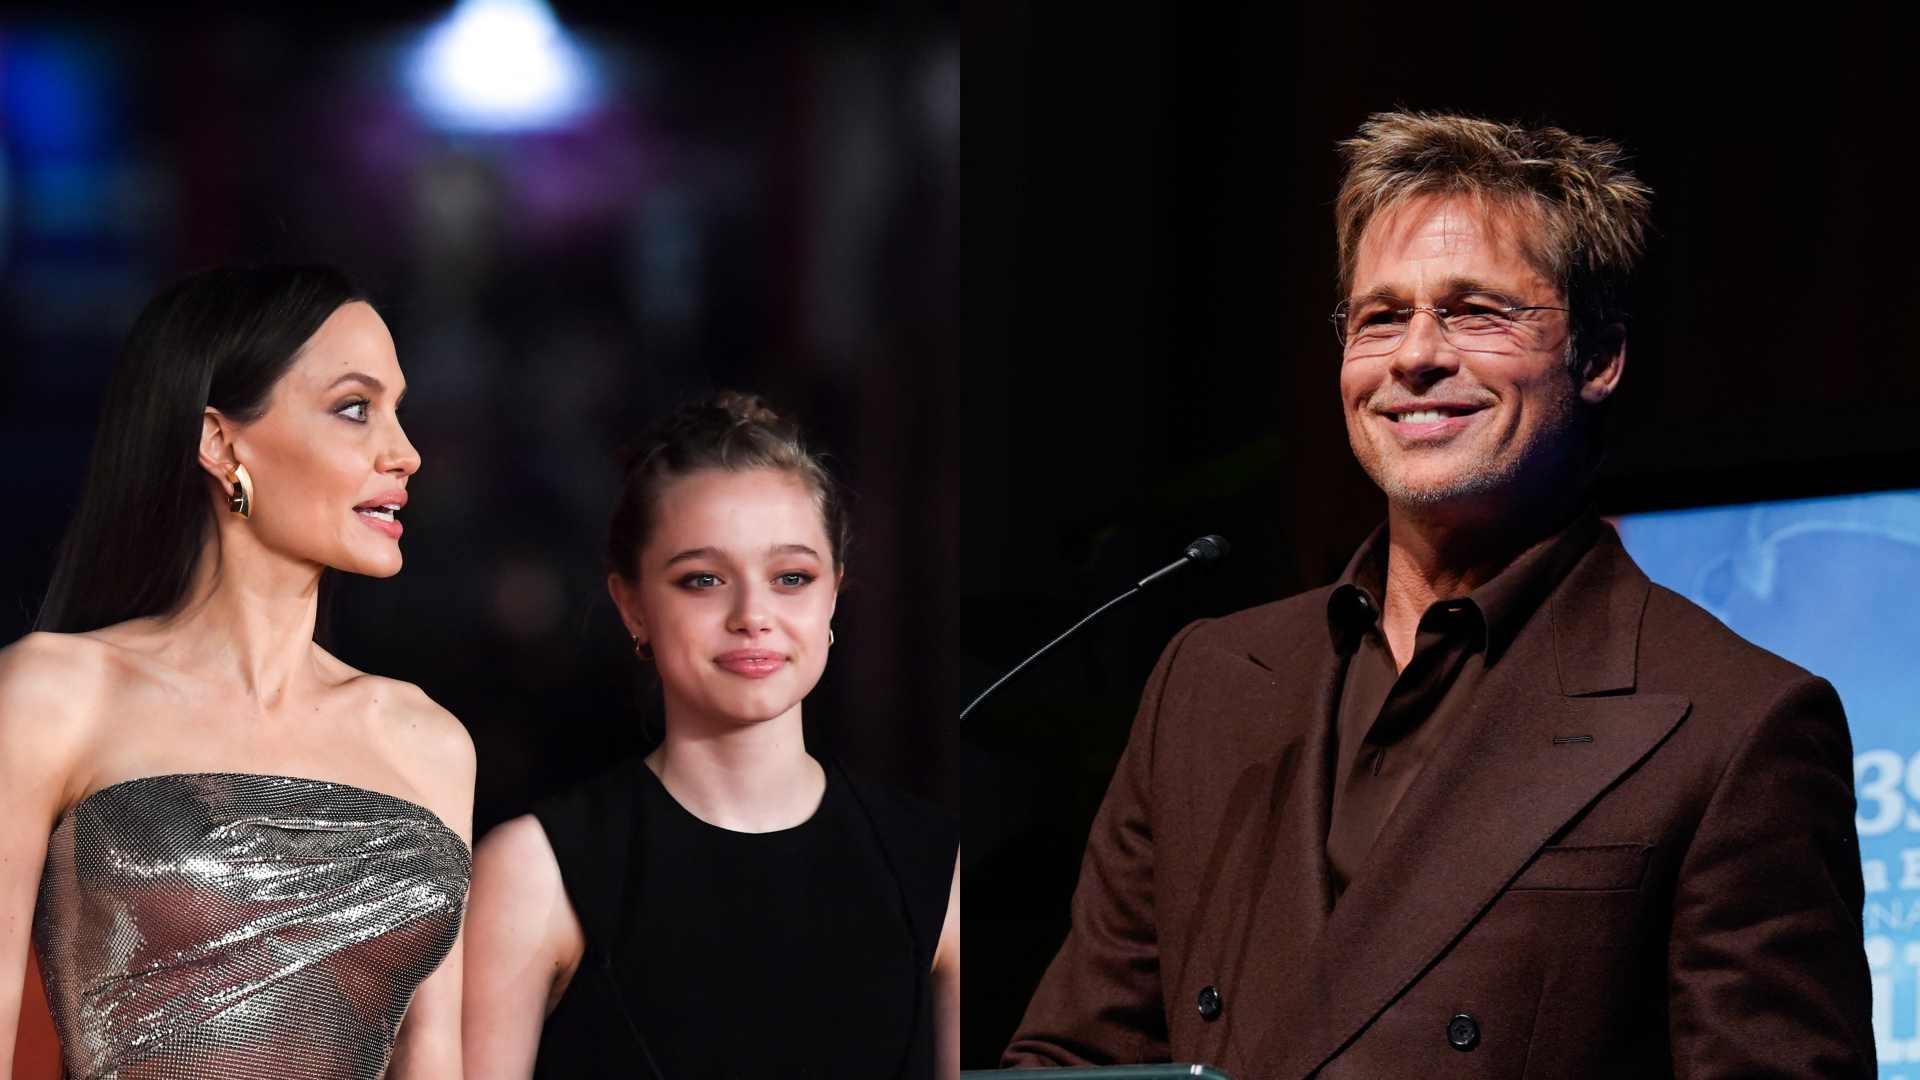 Hija de Brad Pitt ya No Quiere Llevar su Apellido y Pide Suprimirlo por Vía Legal